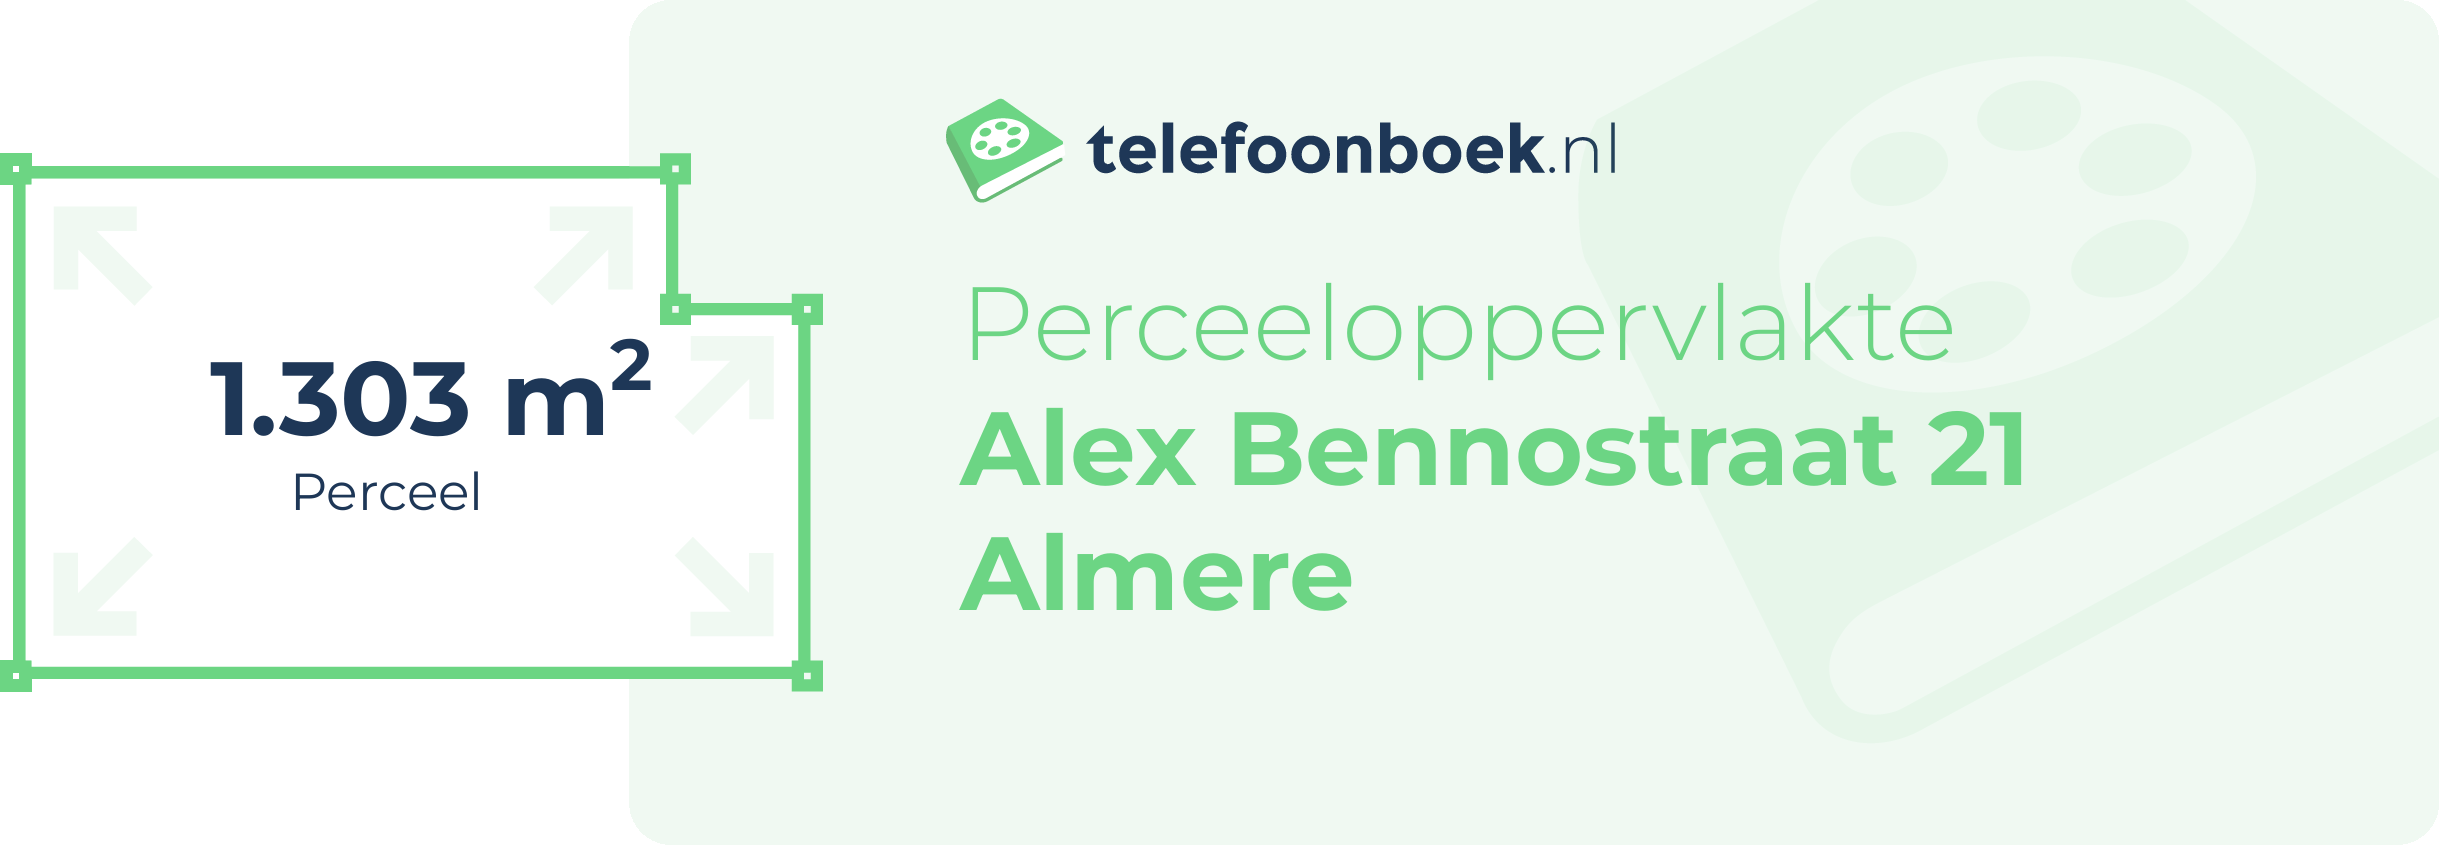 Perceeloppervlakte Alex Bennostraat 21 Almere